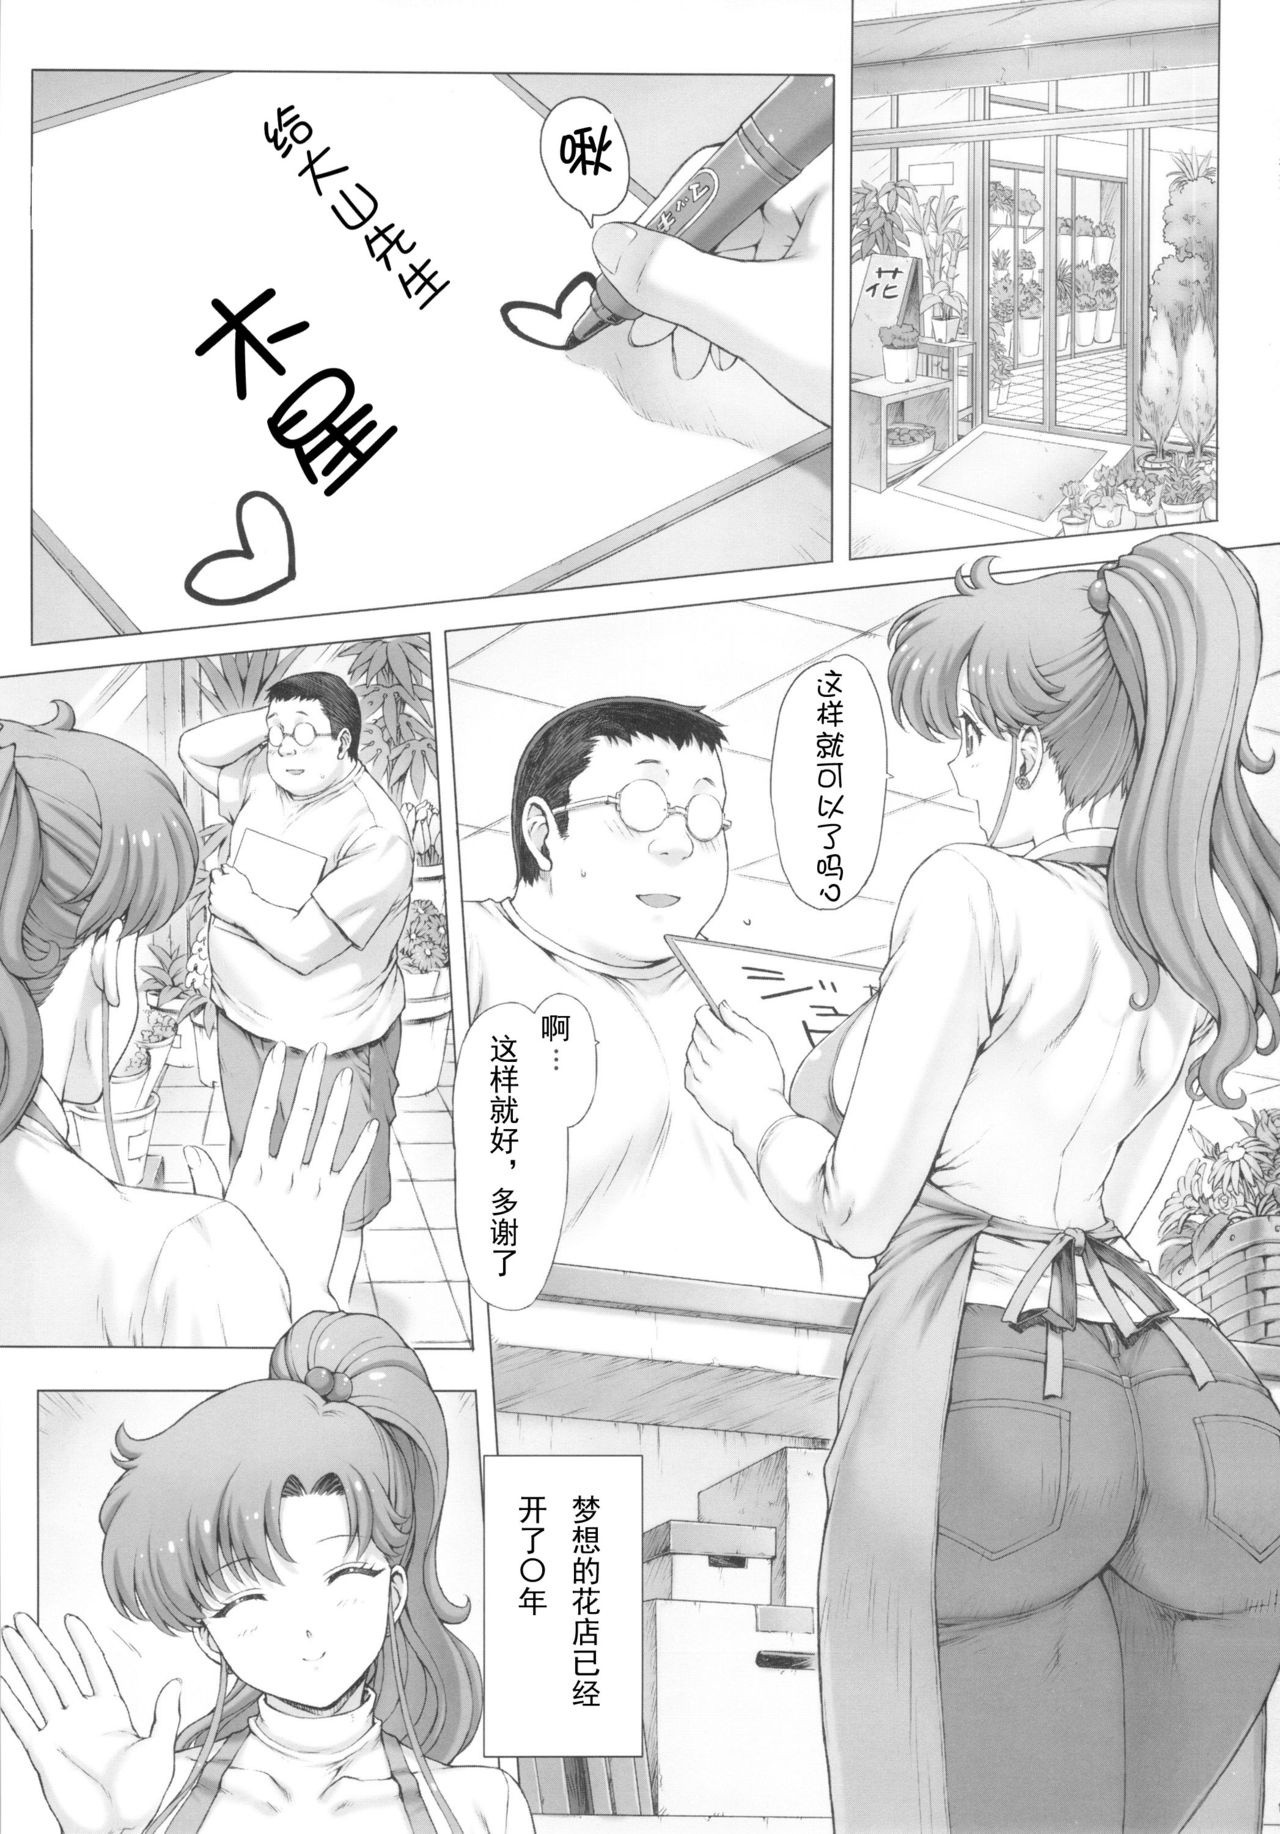 Inka + Omake Bon + Postcard hentai manga picture 2